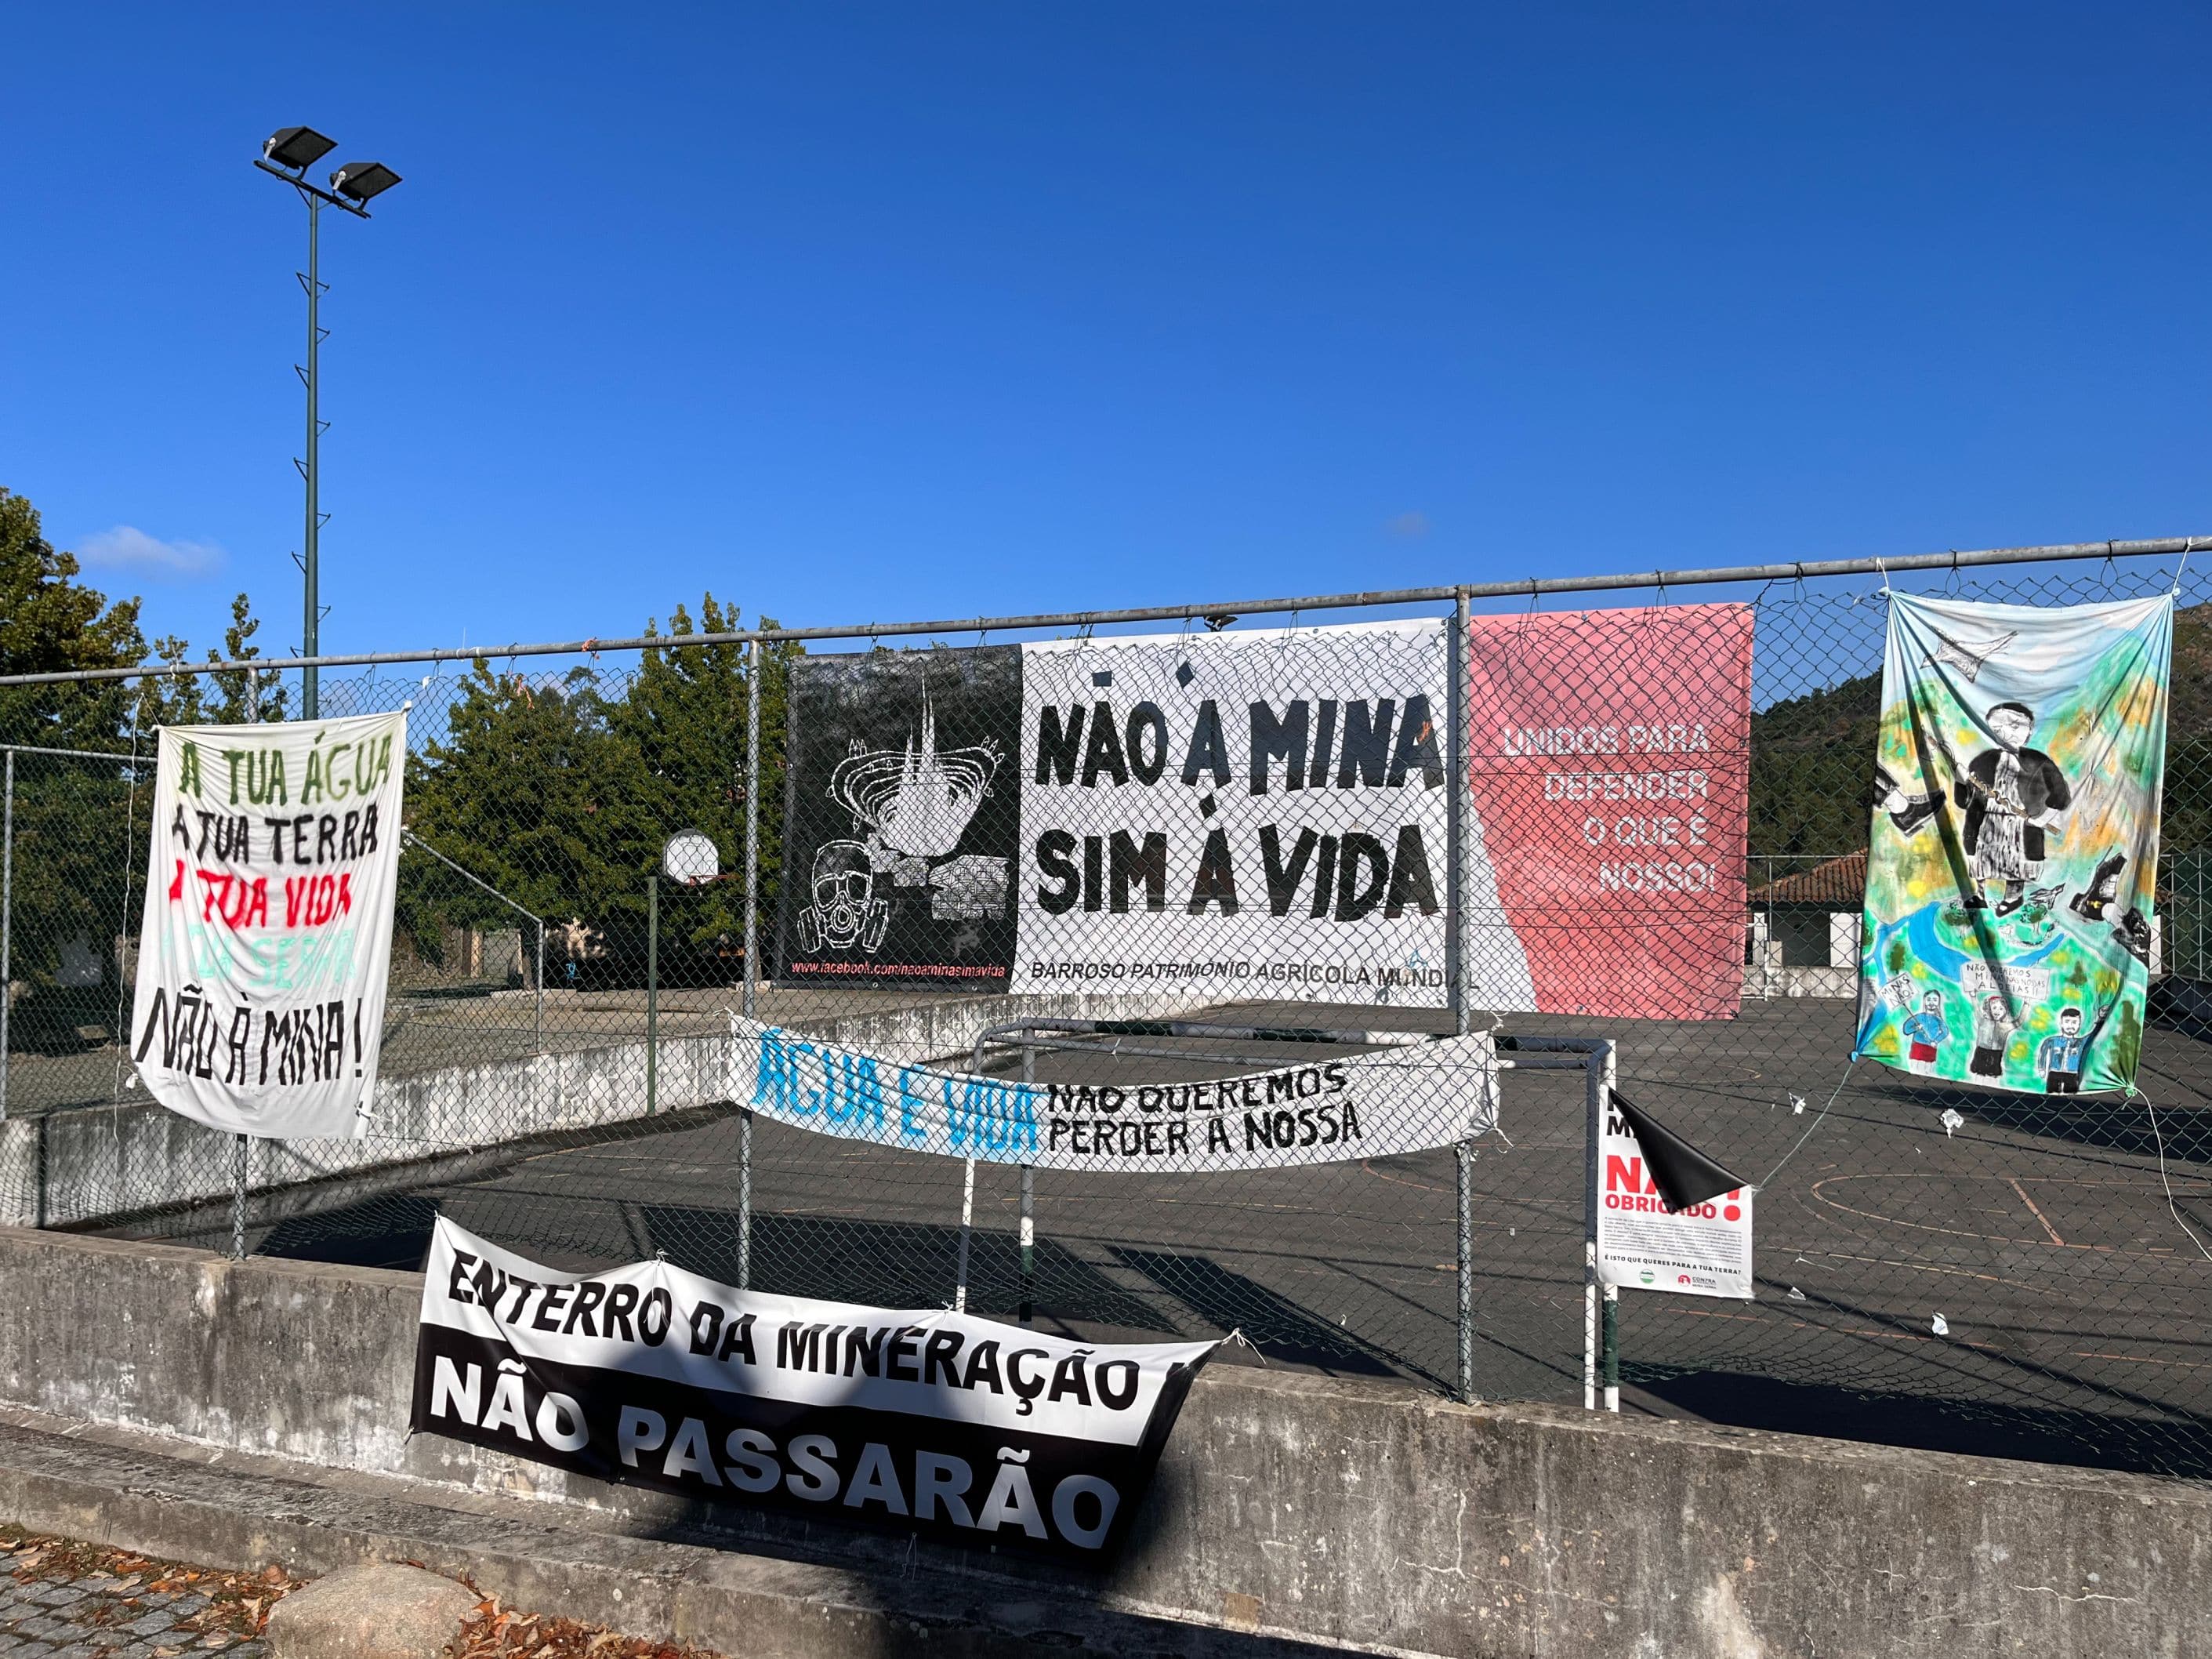 Striscioni contro la miniera a Covas do Barroso